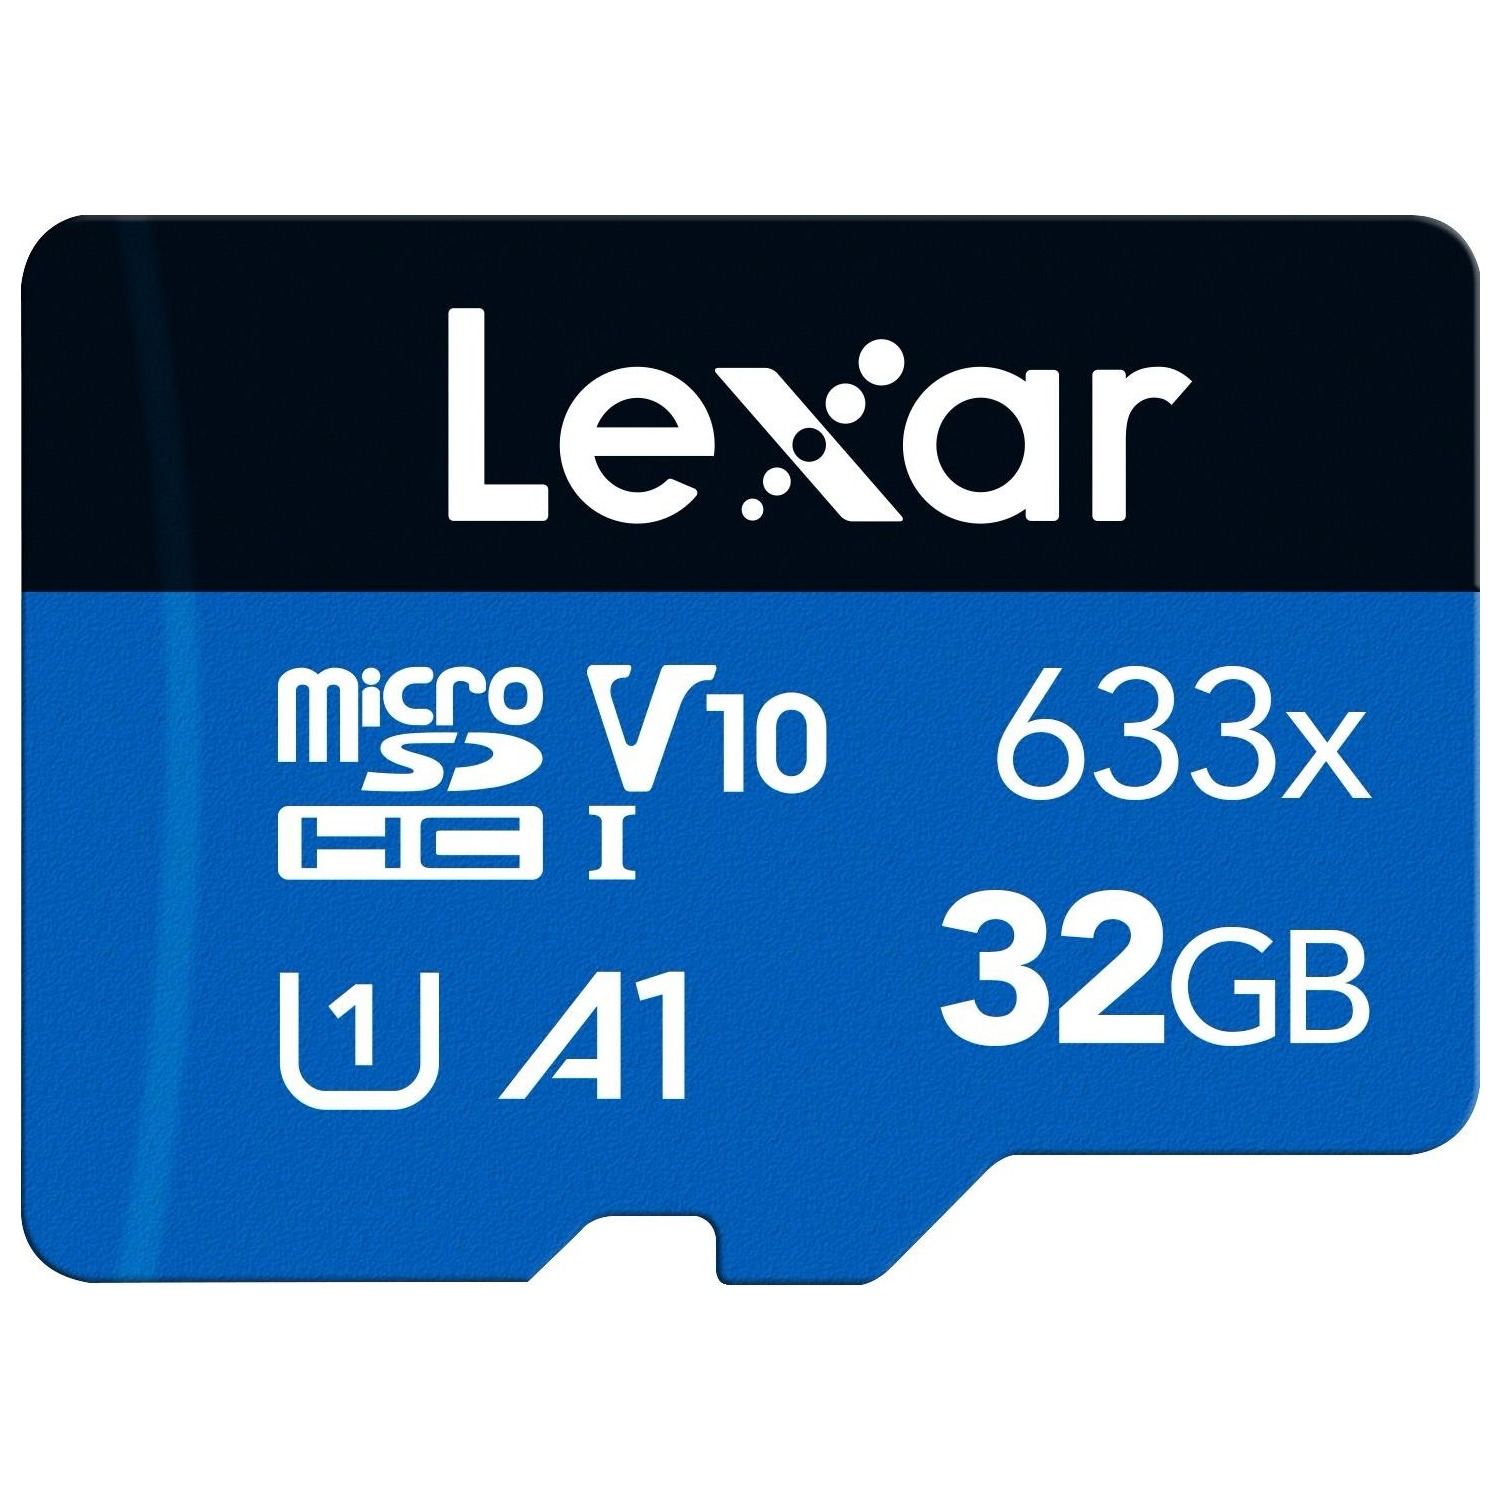 Immagine per MicroSD Lexar 633X 32GB senza adattatore da DIMOStore